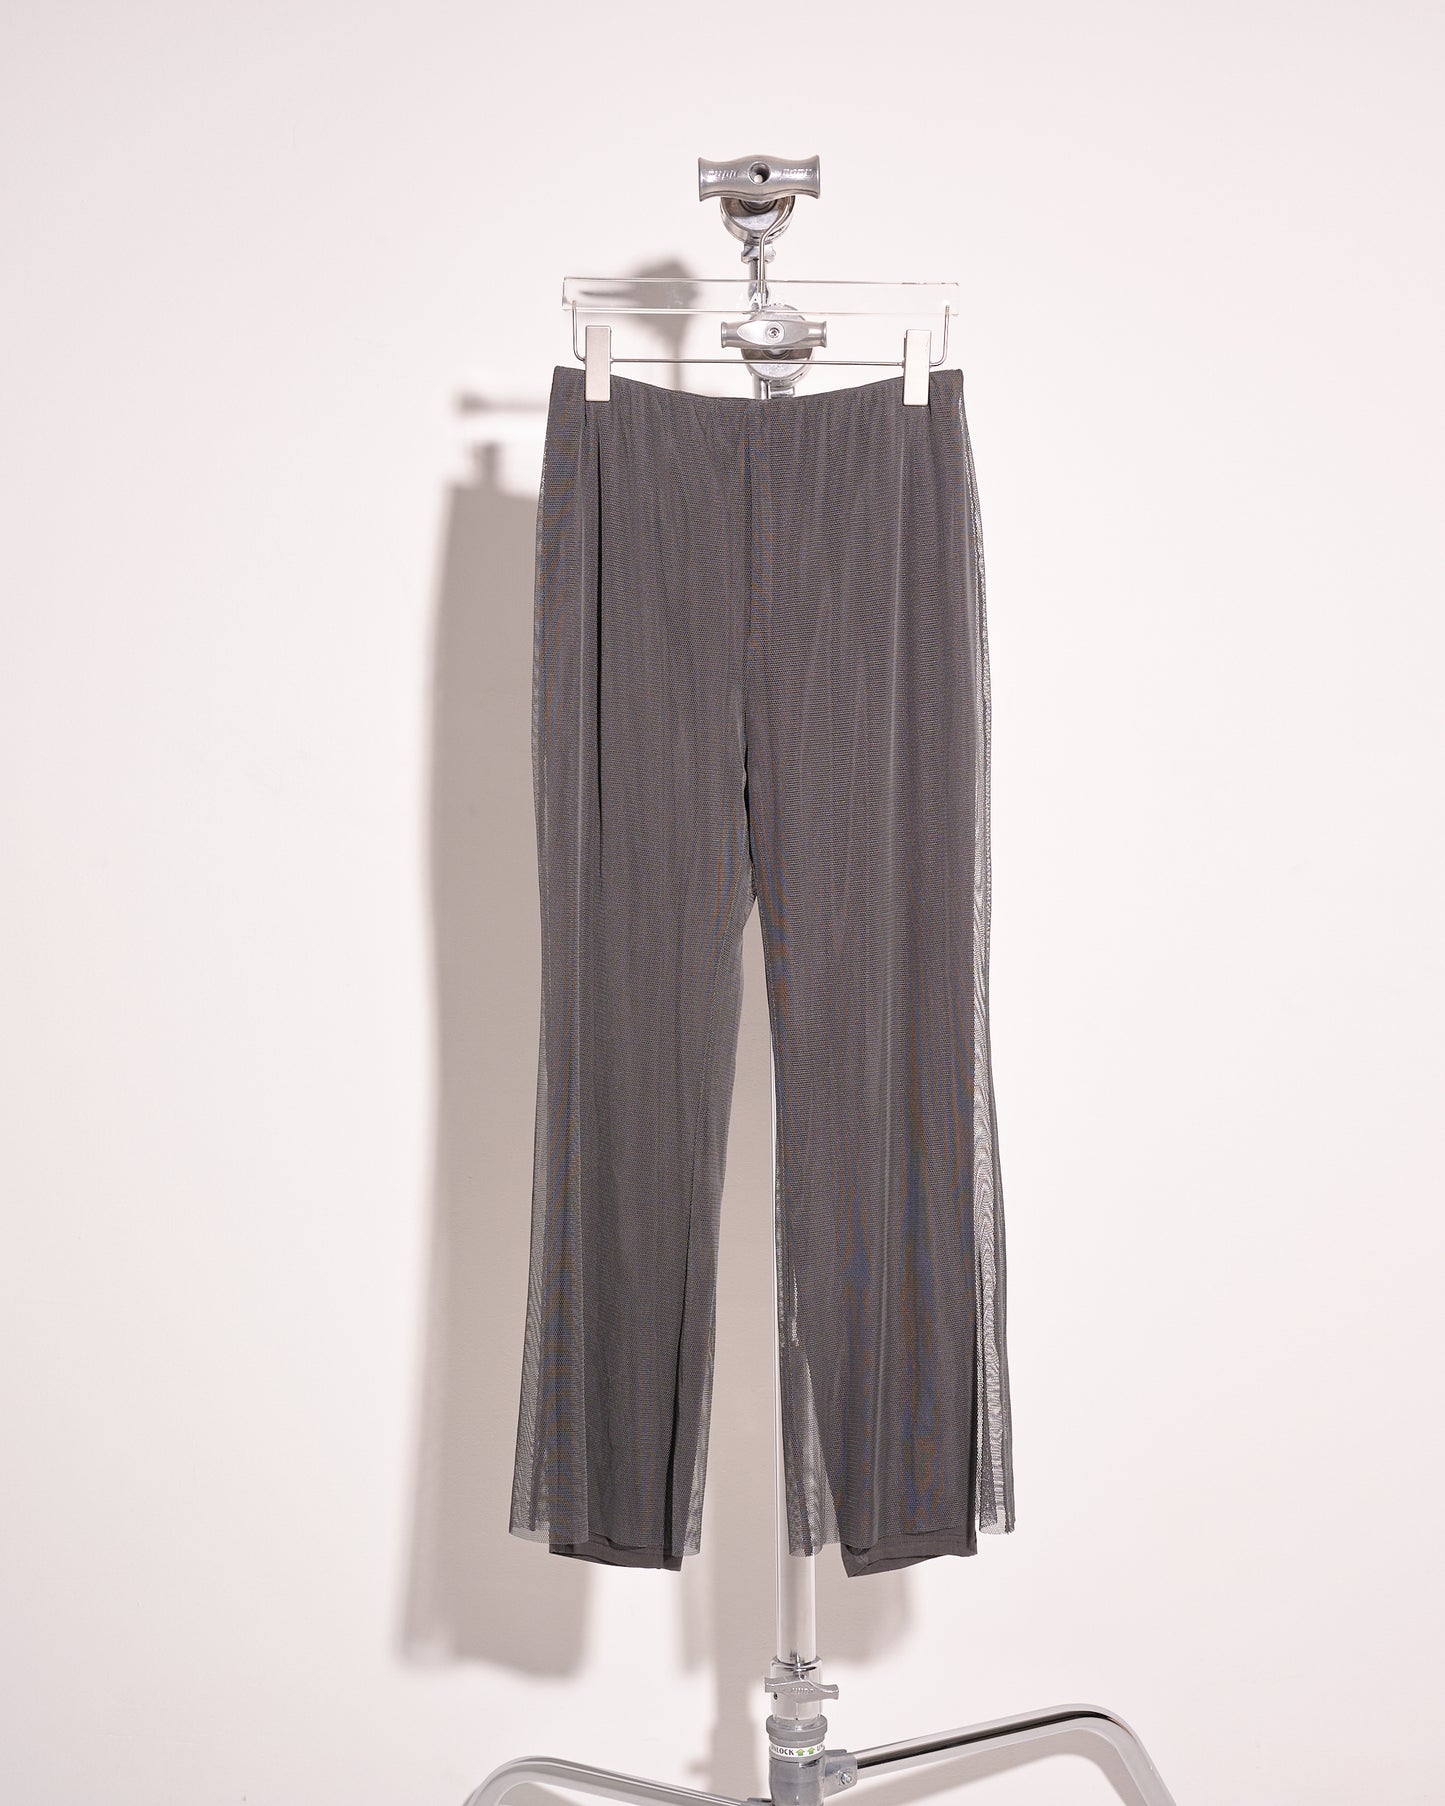 aalis HEDDA mesh pants with leggings (Charcoal)